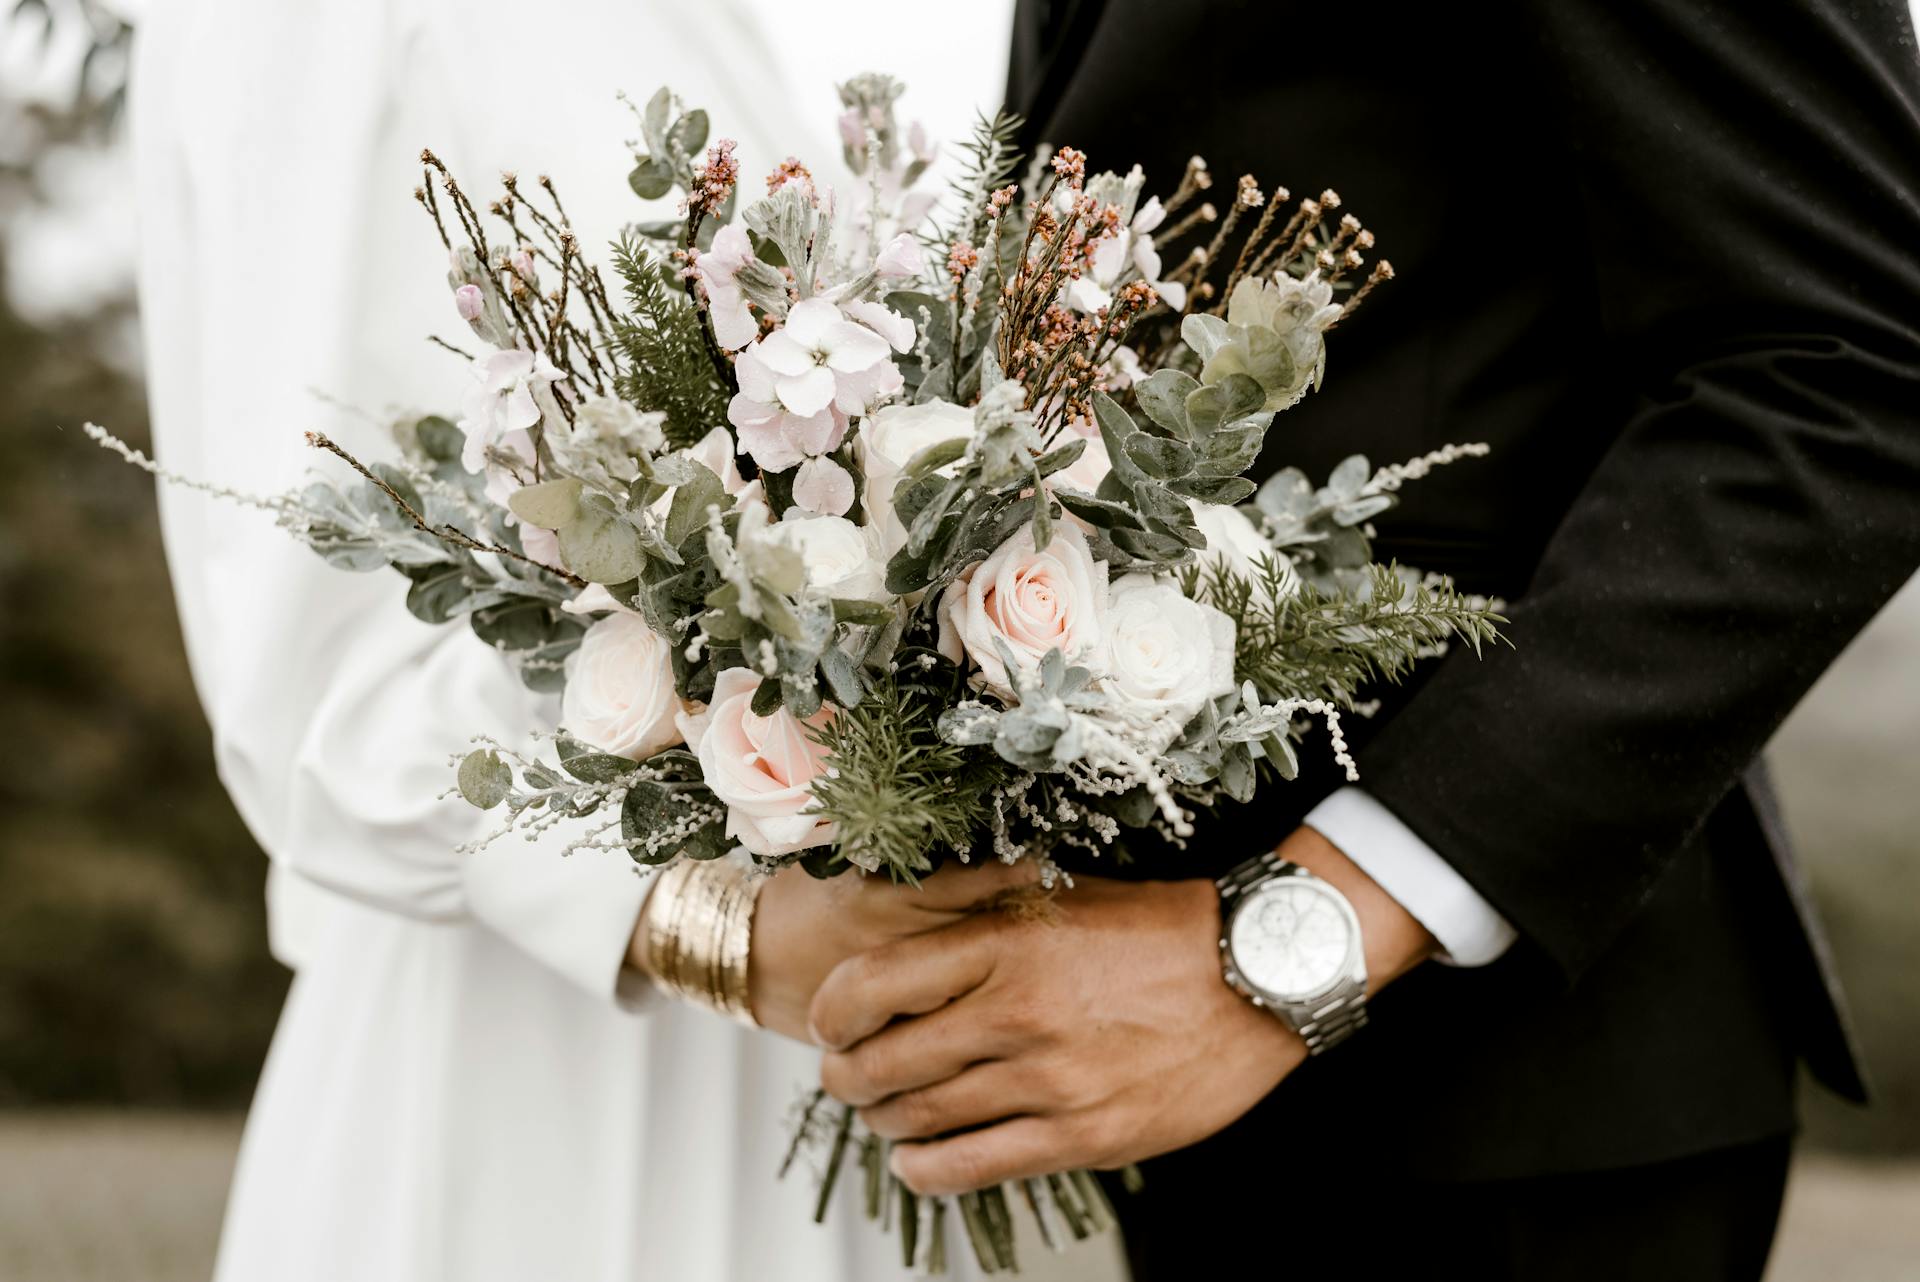 Una novia y un novio cogidos de la mano | Fuente: Pexels